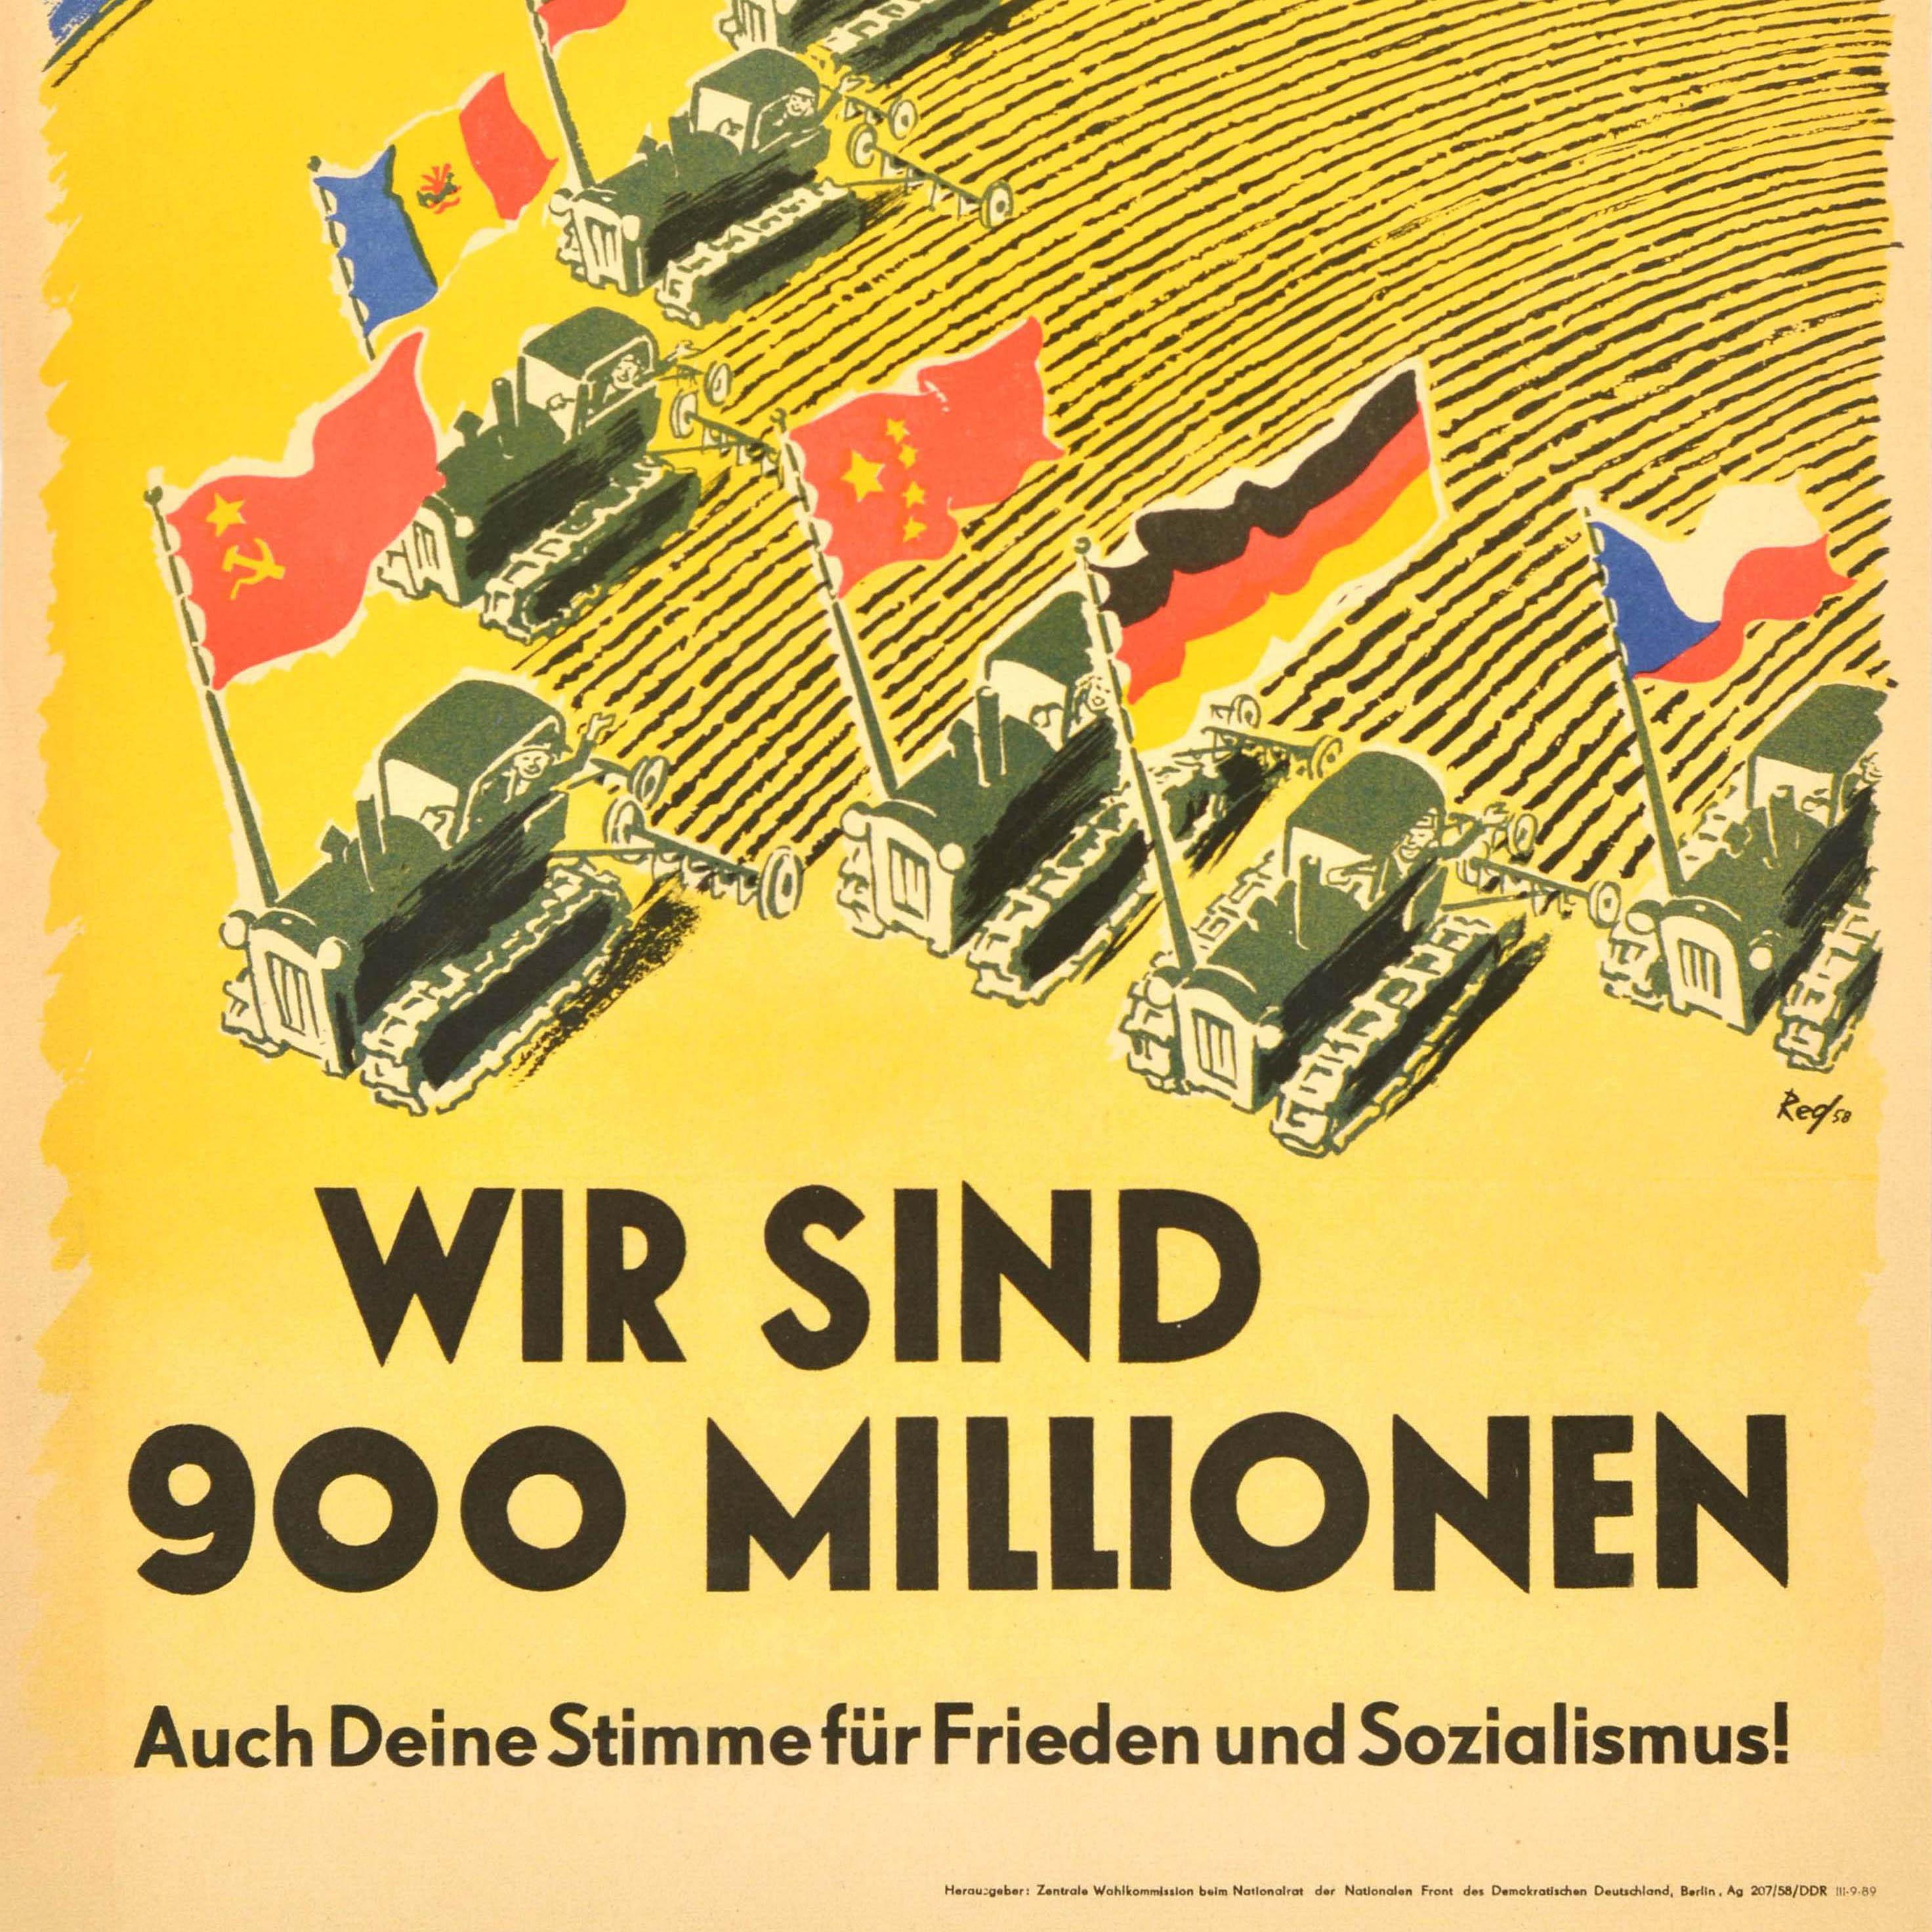 Original ostdeutsches politisches Propagandaplakat - Wir sind 900 Millionen Auch deine Stimme für Frieden und Sozialismus! / Wir sind 900 Millionen Auch deine Stimme für Frieden und Sozialismus - mit einer Illustration von Traktoren, die die